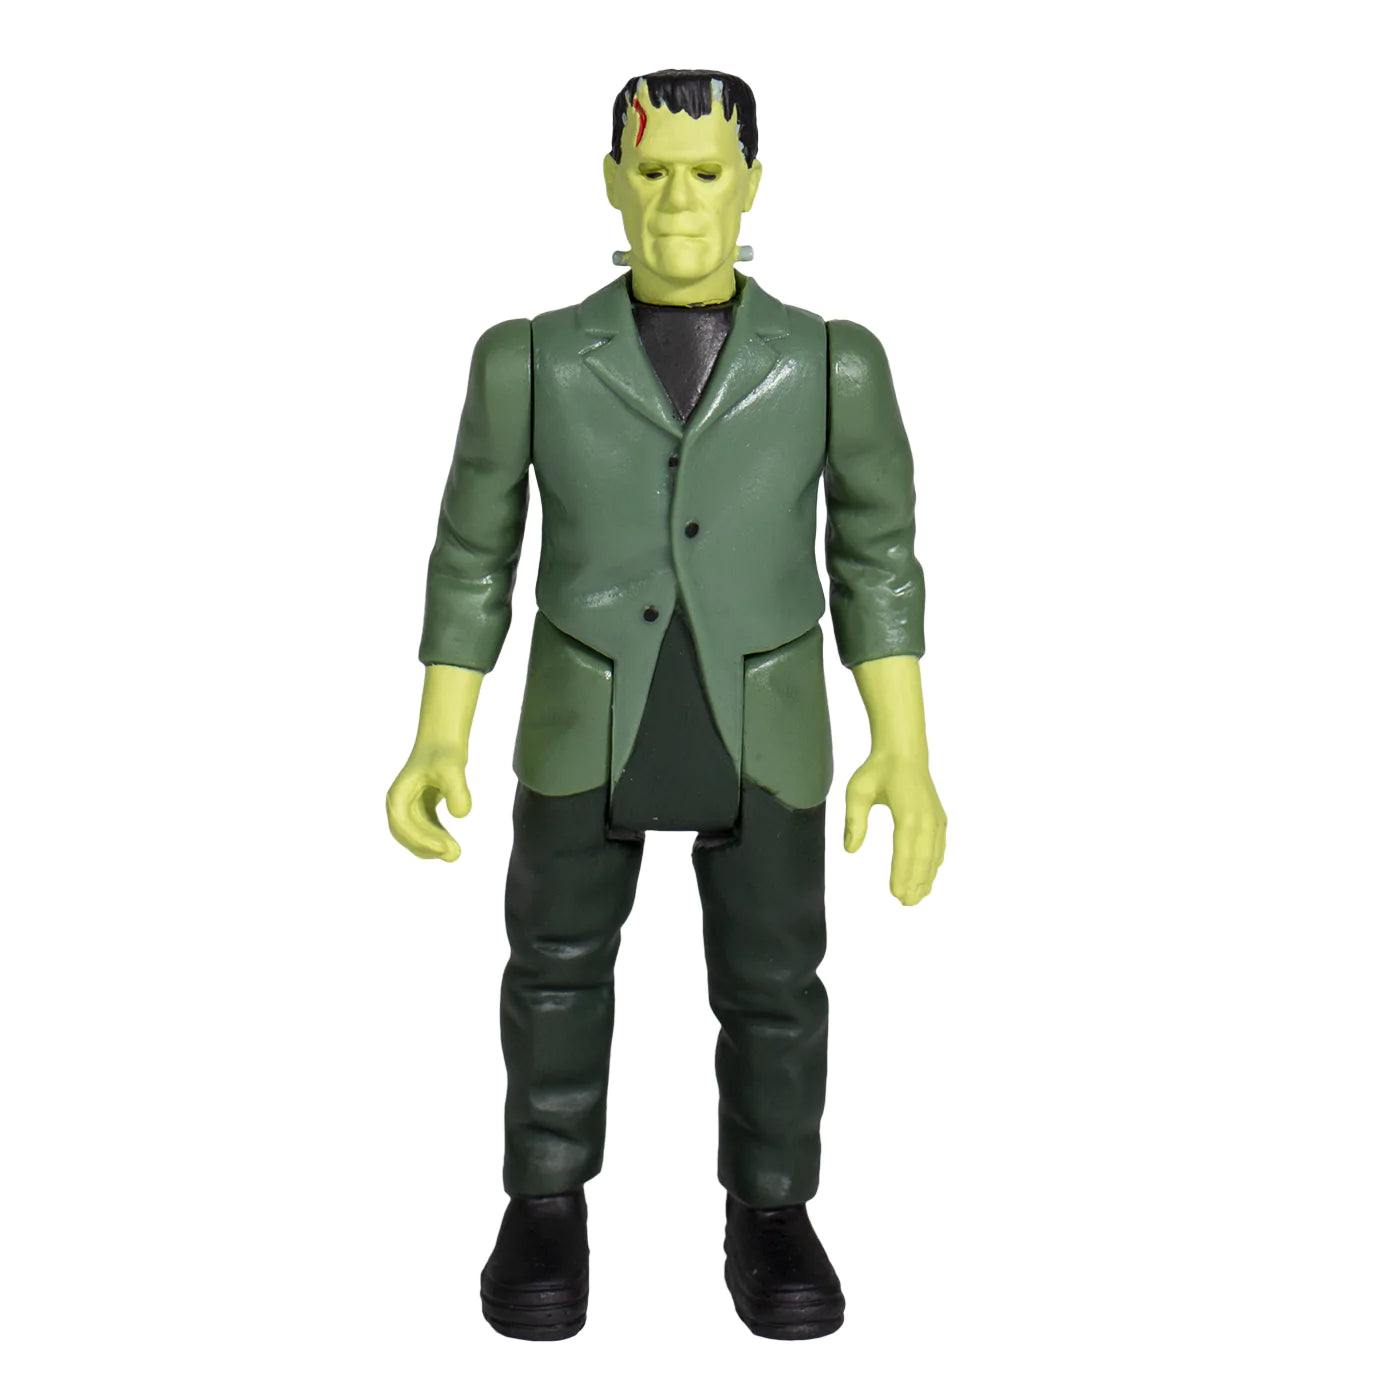 Universal Monsters ReAction Figure - Frankenstein